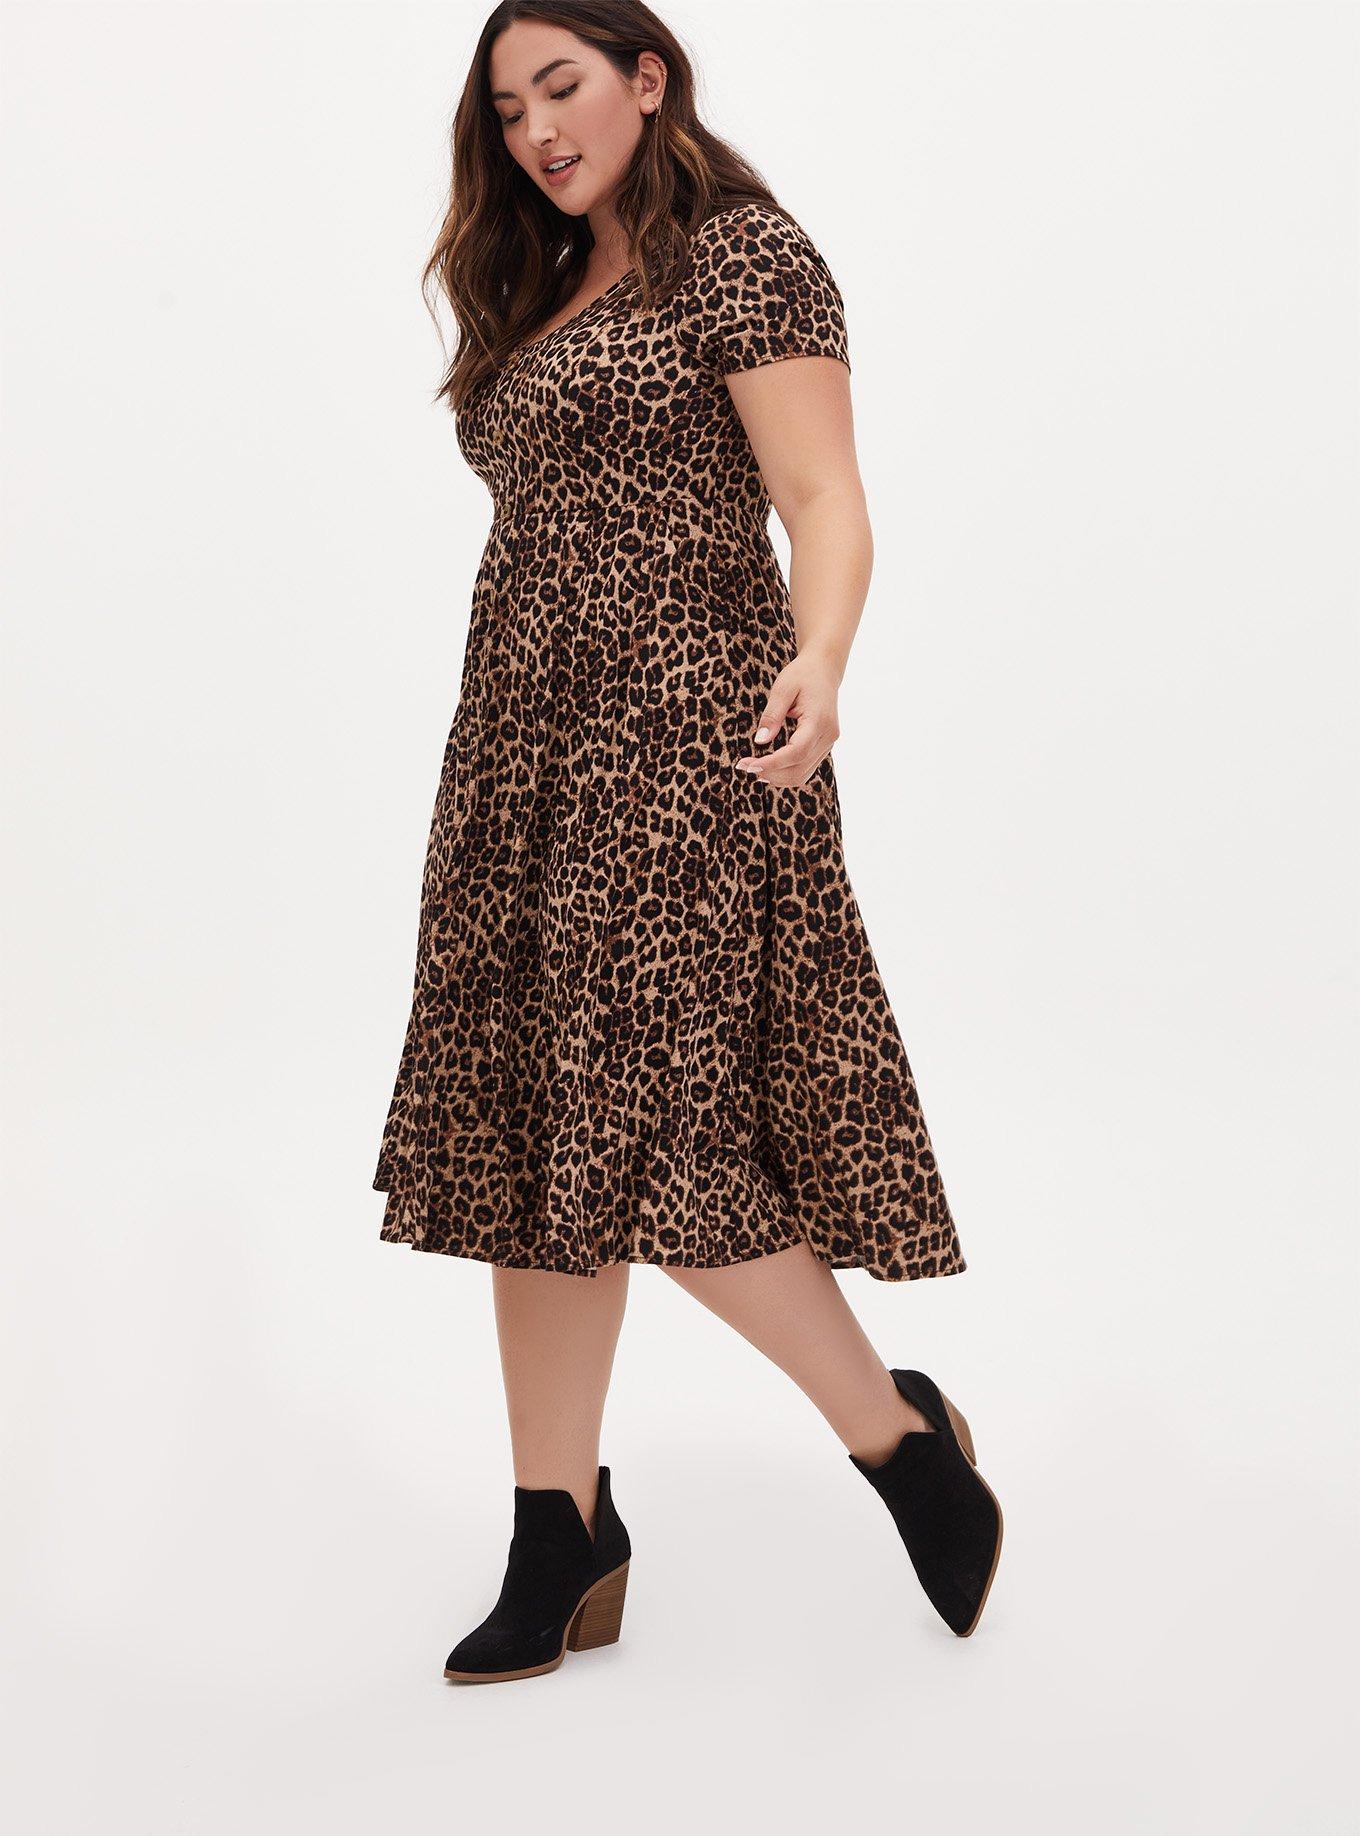 Torrid Dress 00X (M) 4X Mini 3/4 Sleeves Leopard Floral Print Plus Size  Skater